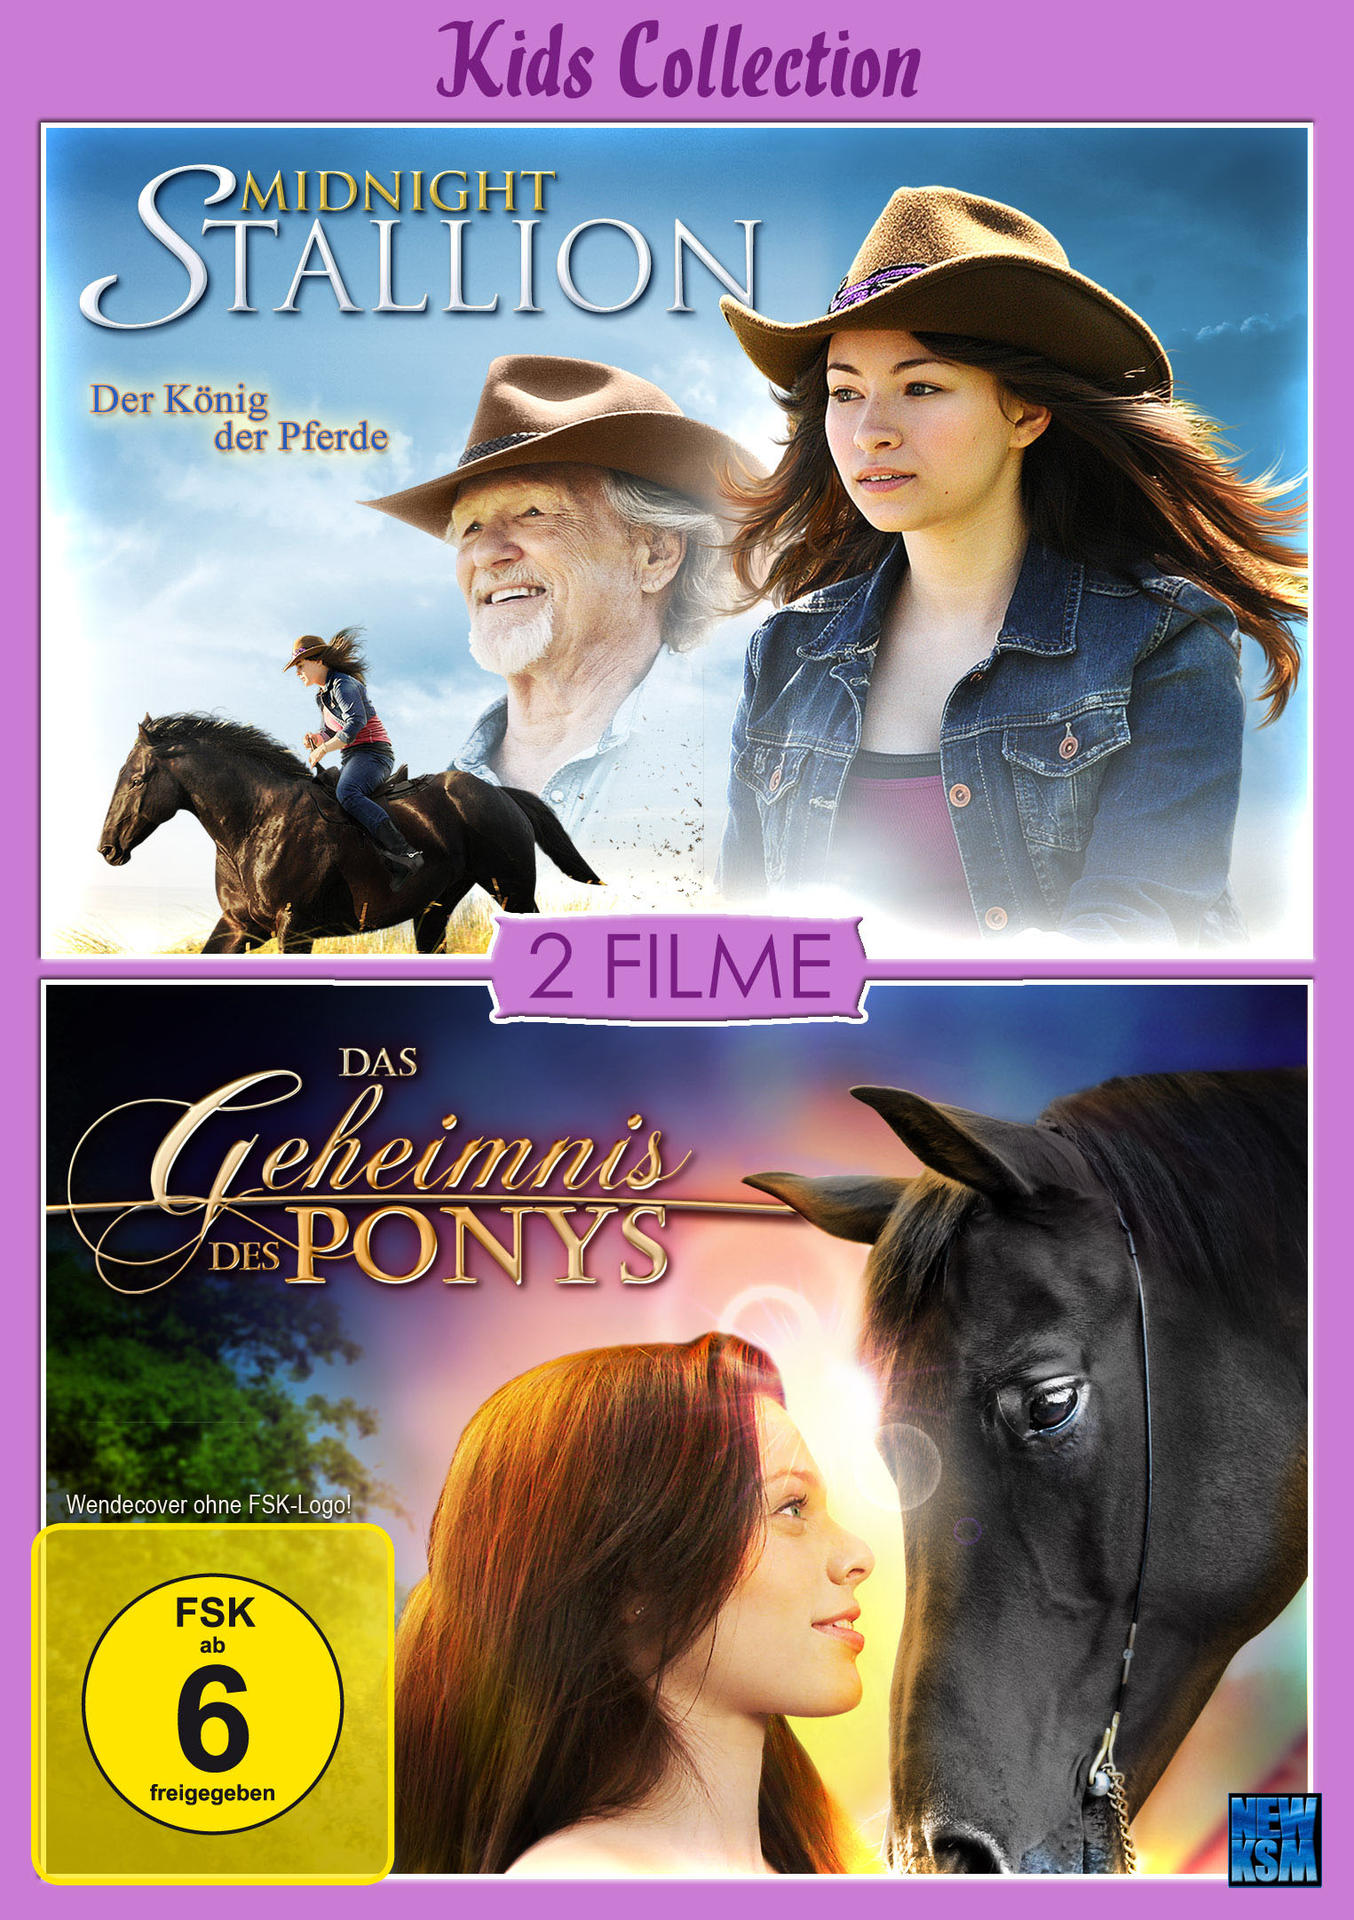 Geheimnis Collection Midnight Kids - Stallion des DVD Das + Ponys